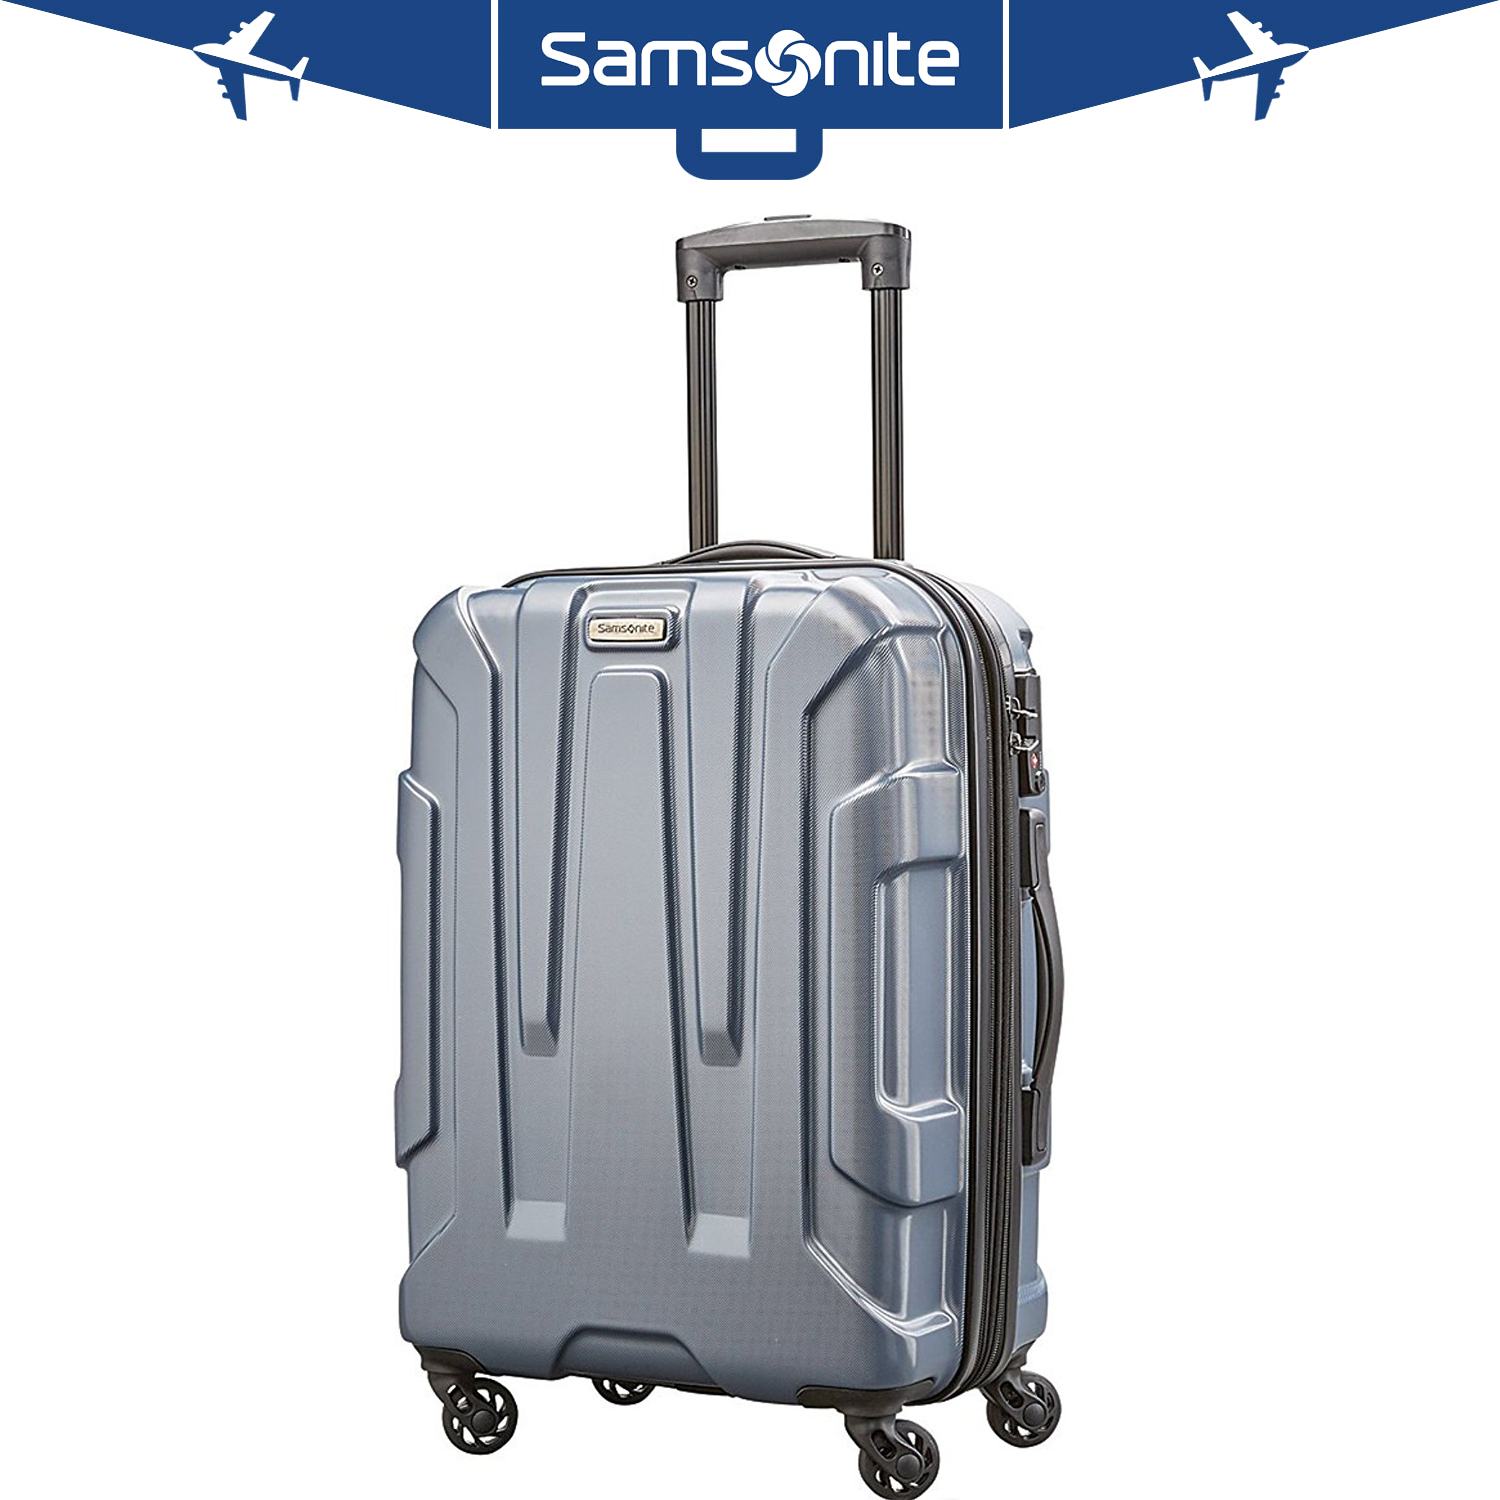 Ebay samsonite suitcase